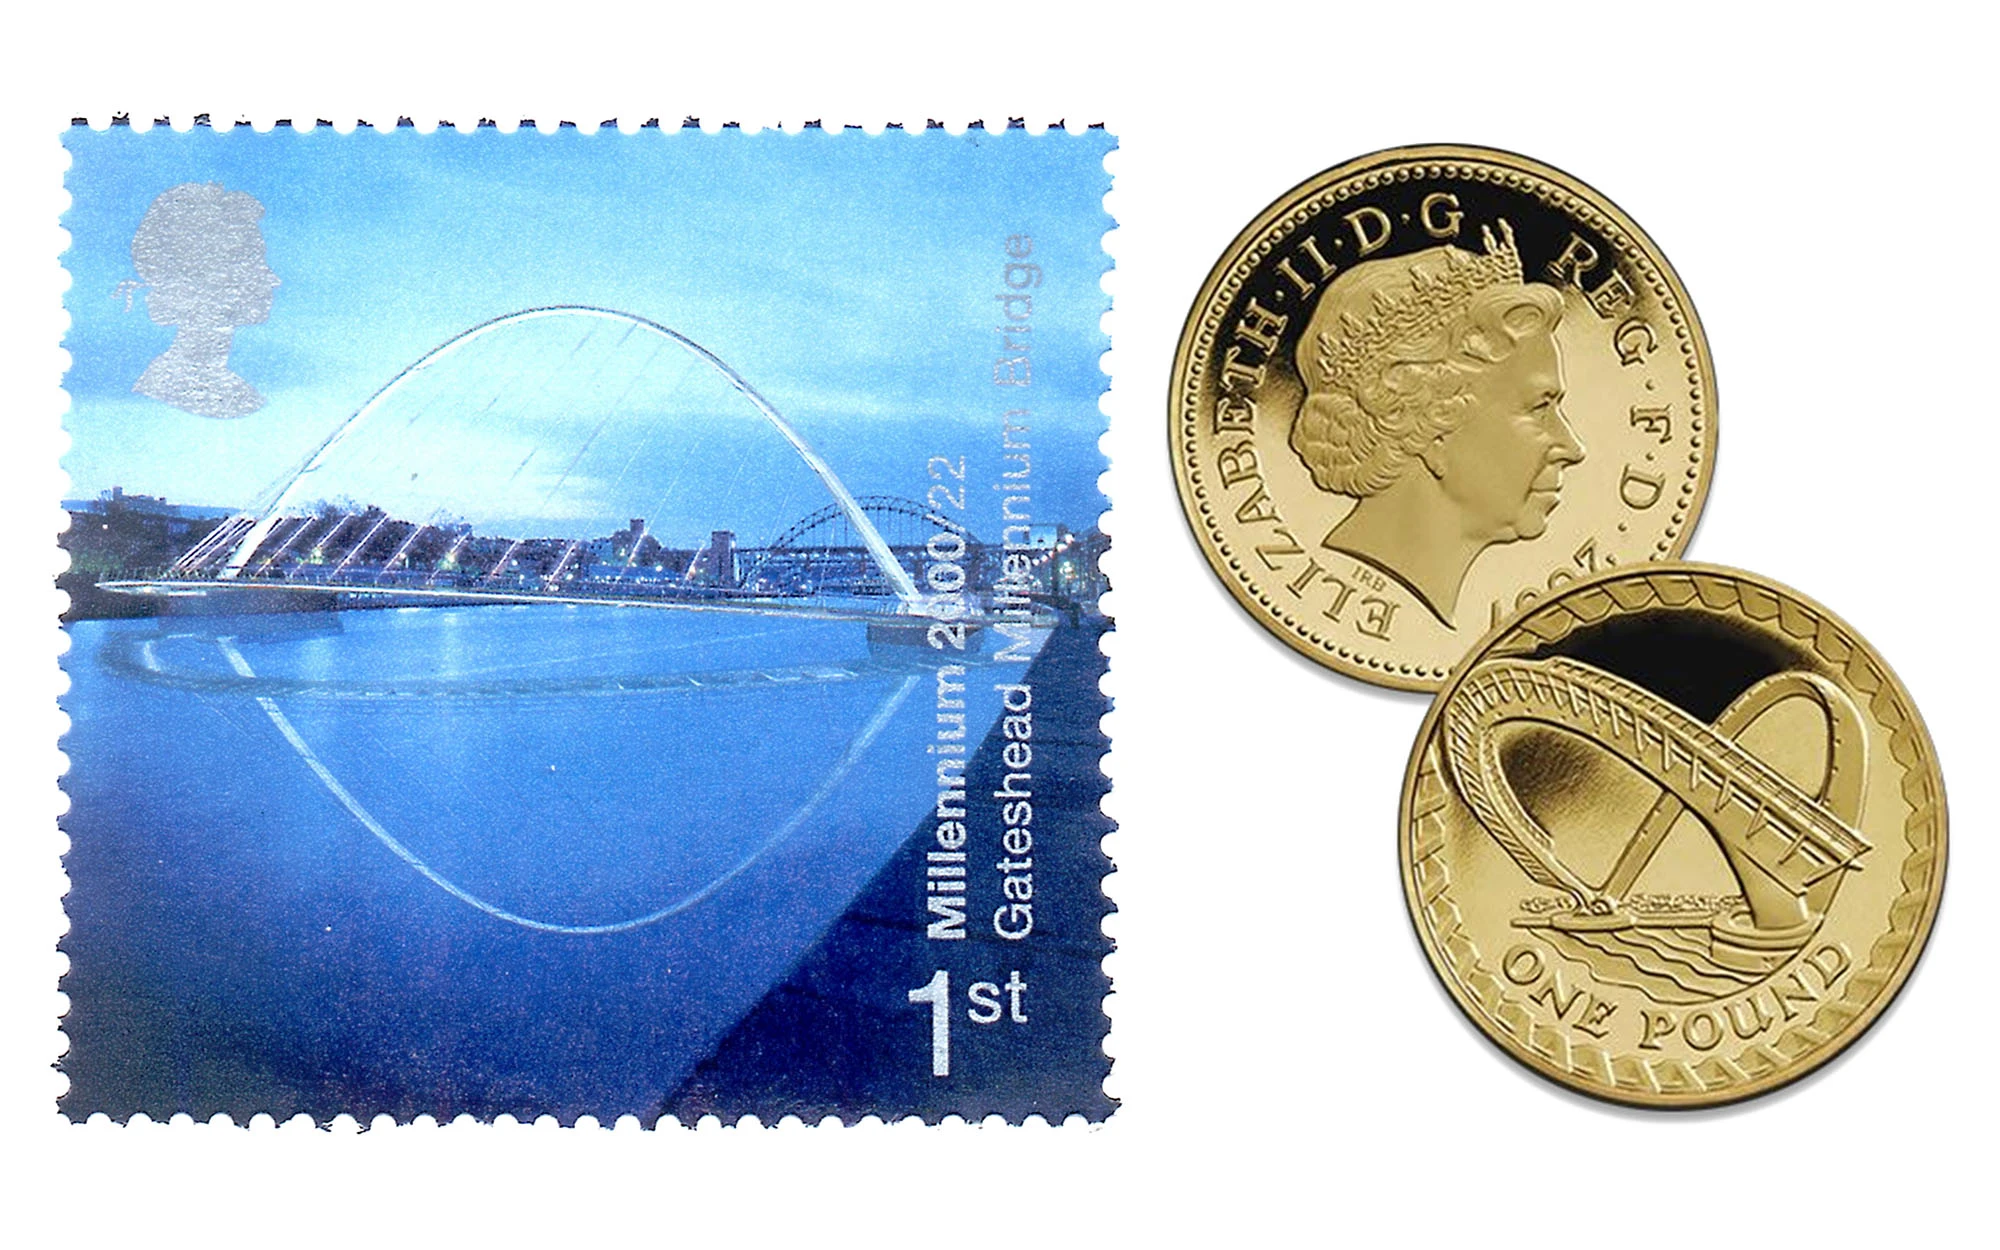 Gateshead Millennium Bridge coin and stamp